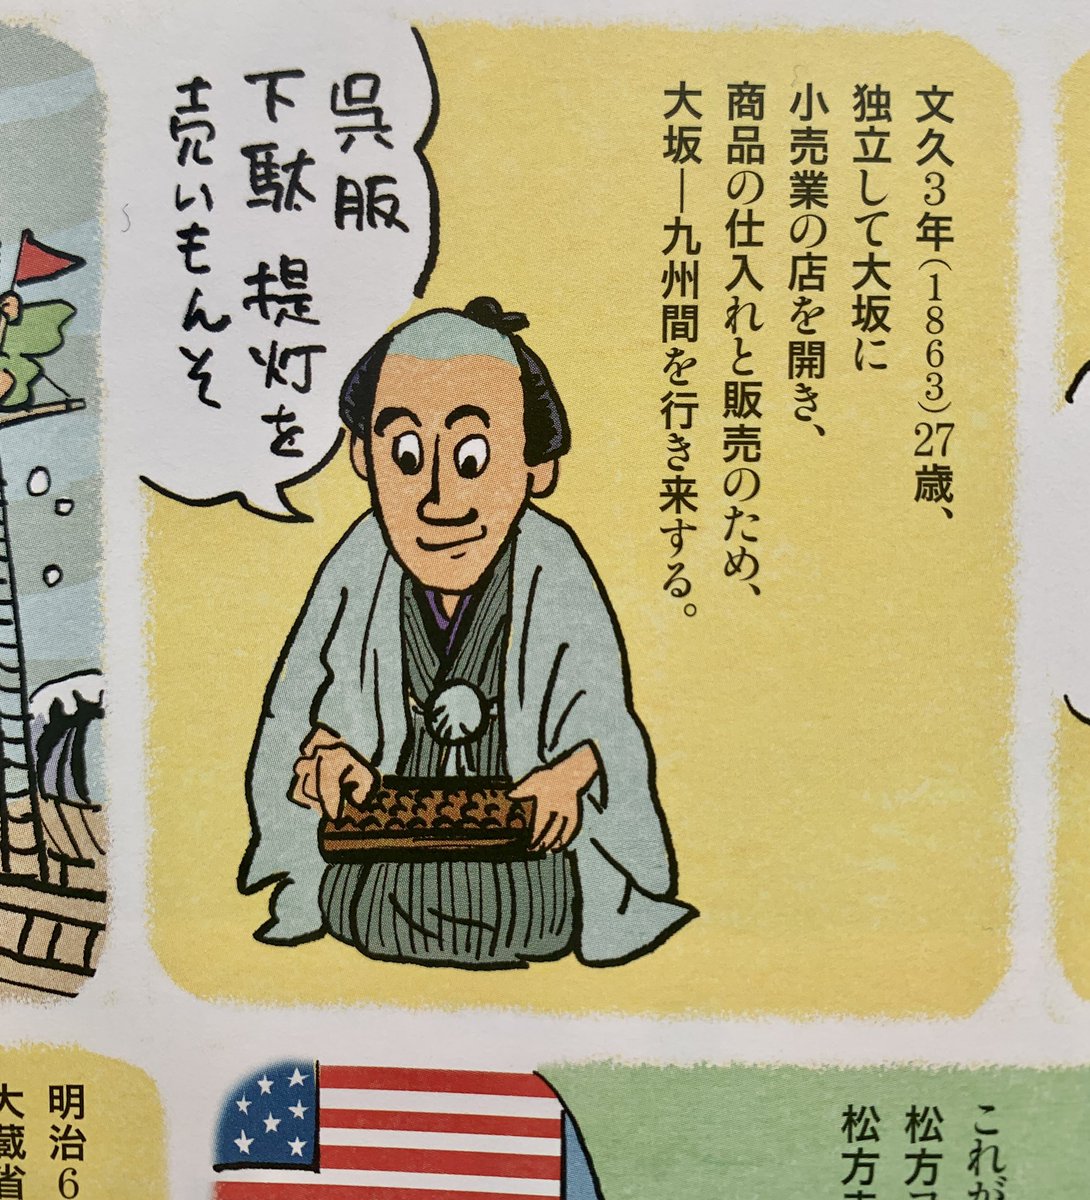 明治23年、日本で初めて私立美術館を作った人は誰でしょう?

そのアッパレな傑物は川崎正蔵。

彼の人生を見開き2ページ漫画にしております。今月の「芸術新潮」で。 